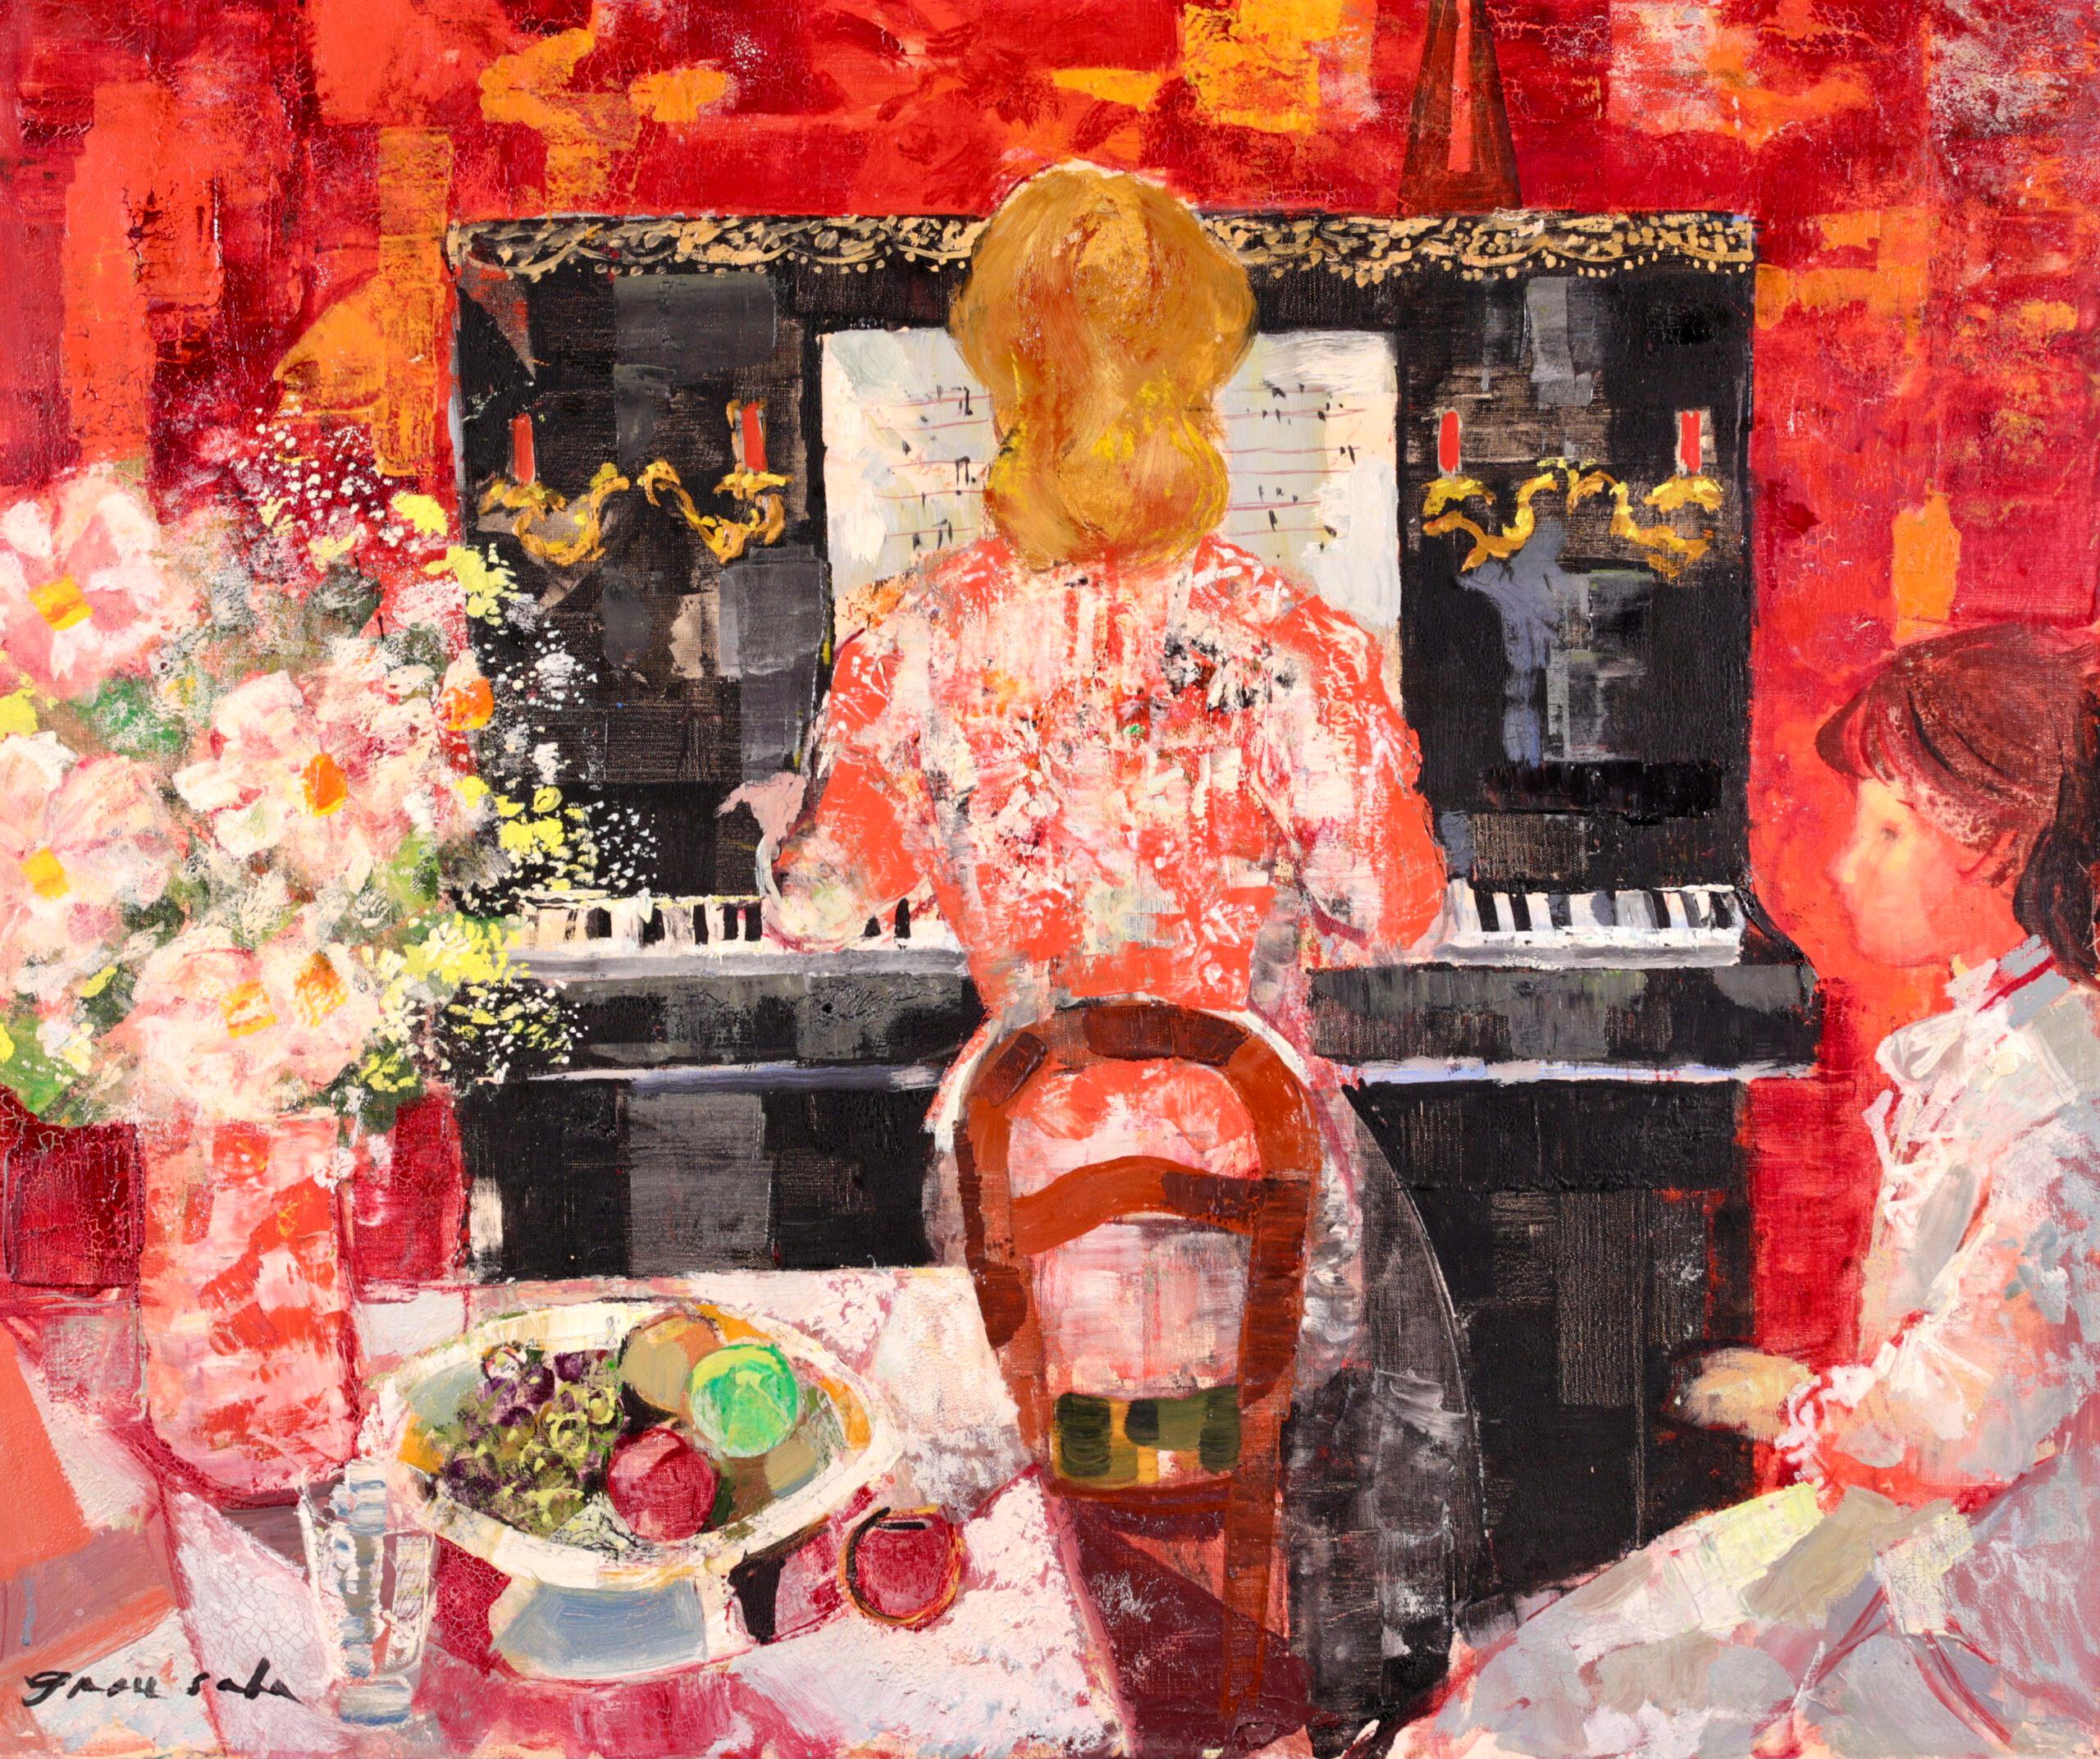 Huile sur toile signée et titrée représentant un personnage dans un intérieur vers 1950 par l'artiste post impressionniste espagnol Emilio Grau Sala. L'œuvre représente une dame aux cheveux roux, vêtue d'une robe rouge, assise à un piano. Une jeune